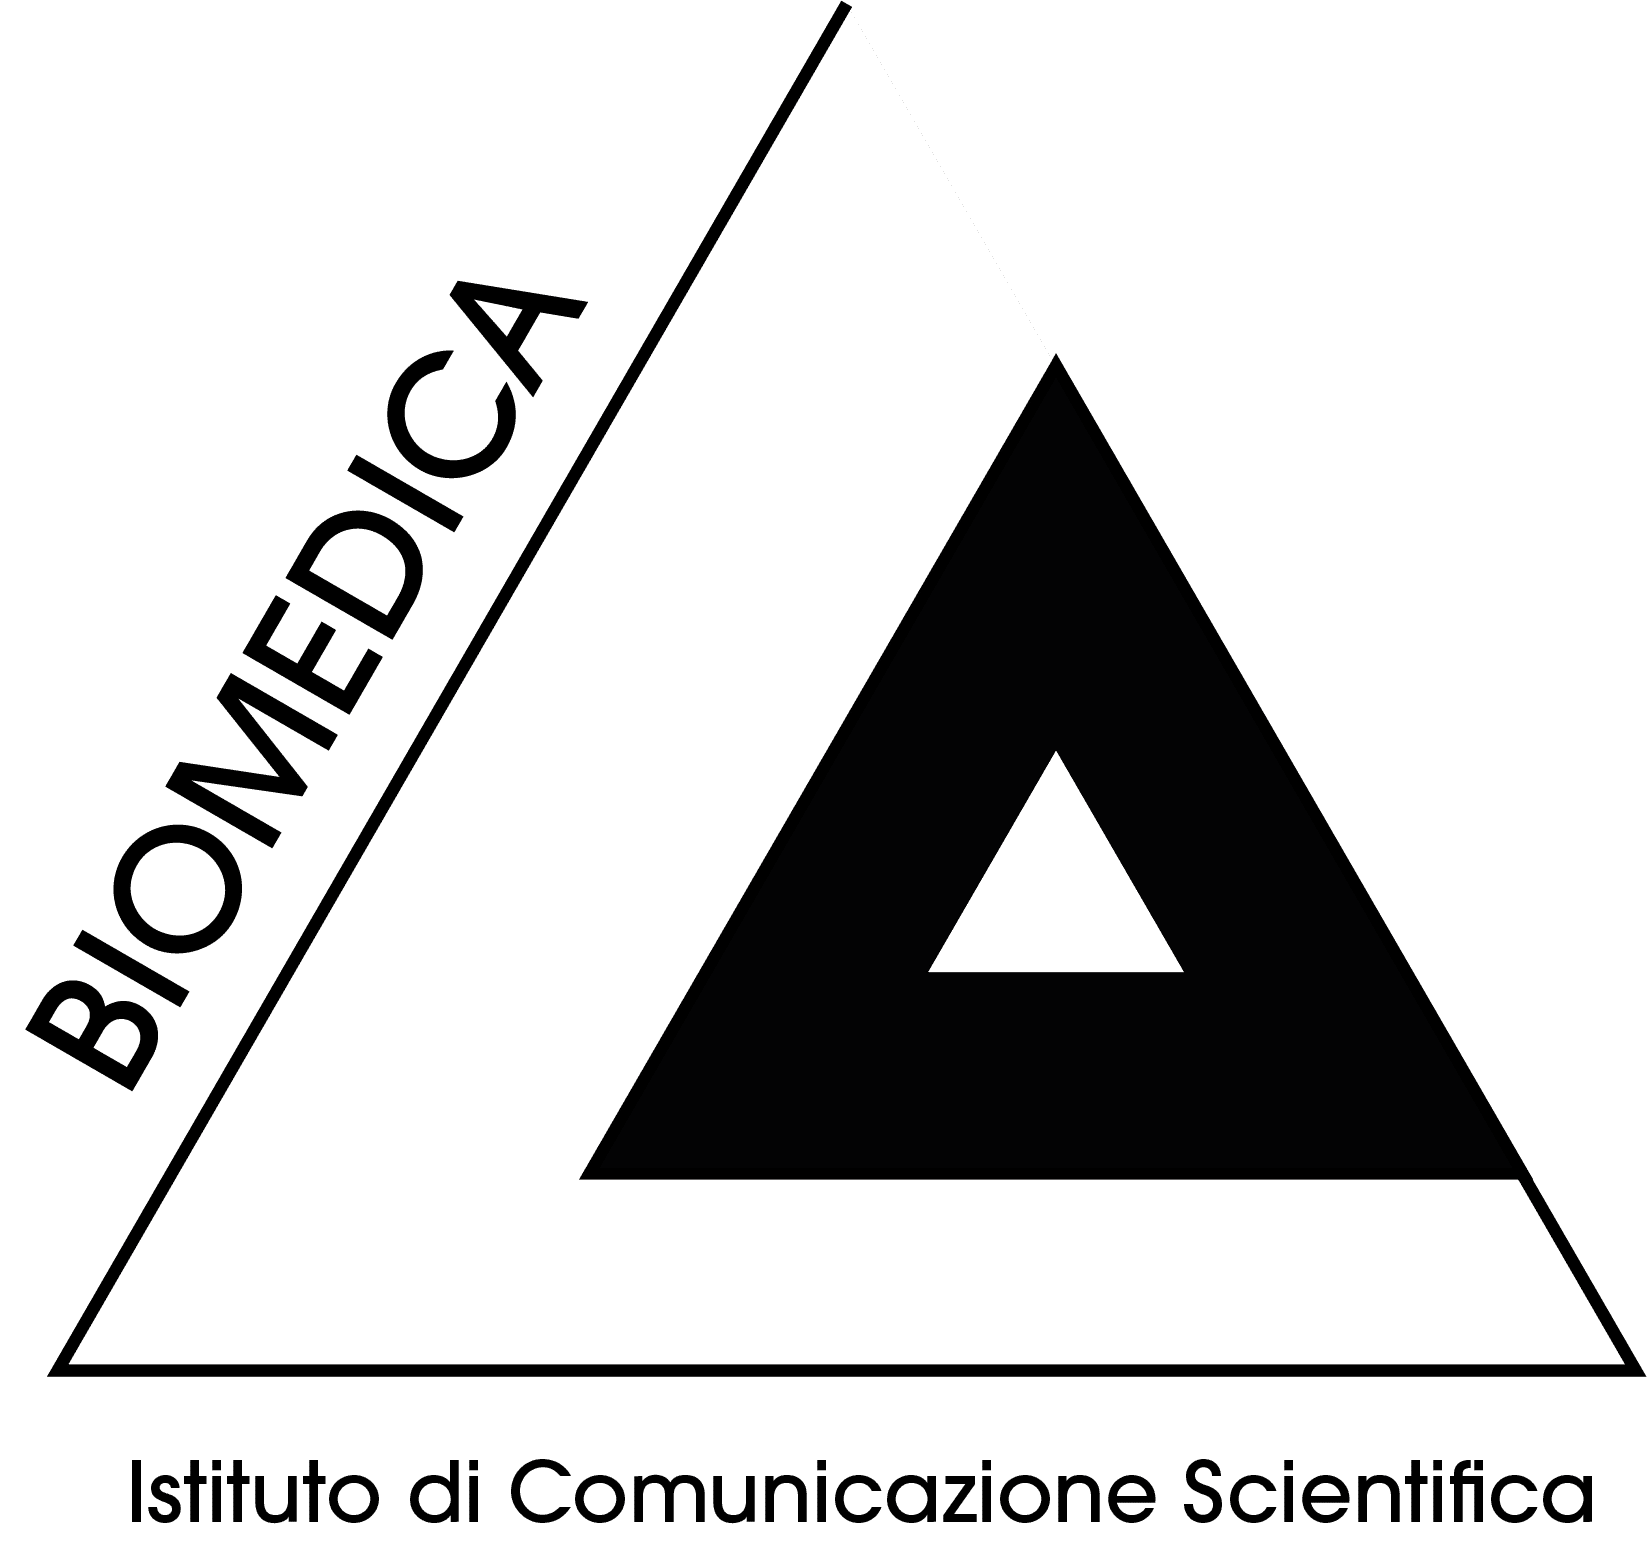 Biomedica Istituto di Comunicazione Scientifica